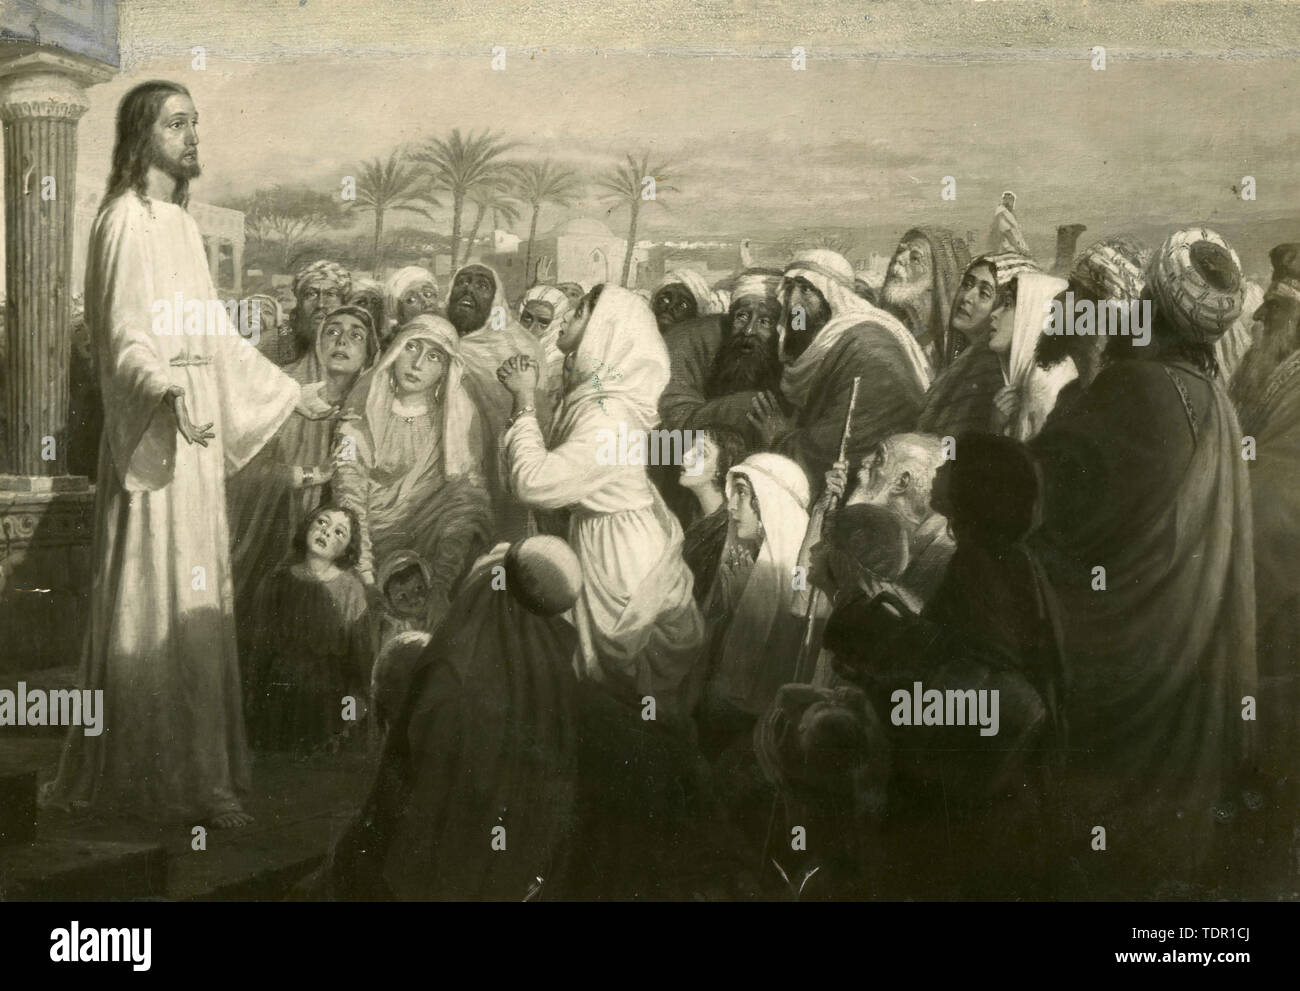 Jesucristo y sus seguidores, la pintura de 1930 Foto de stock